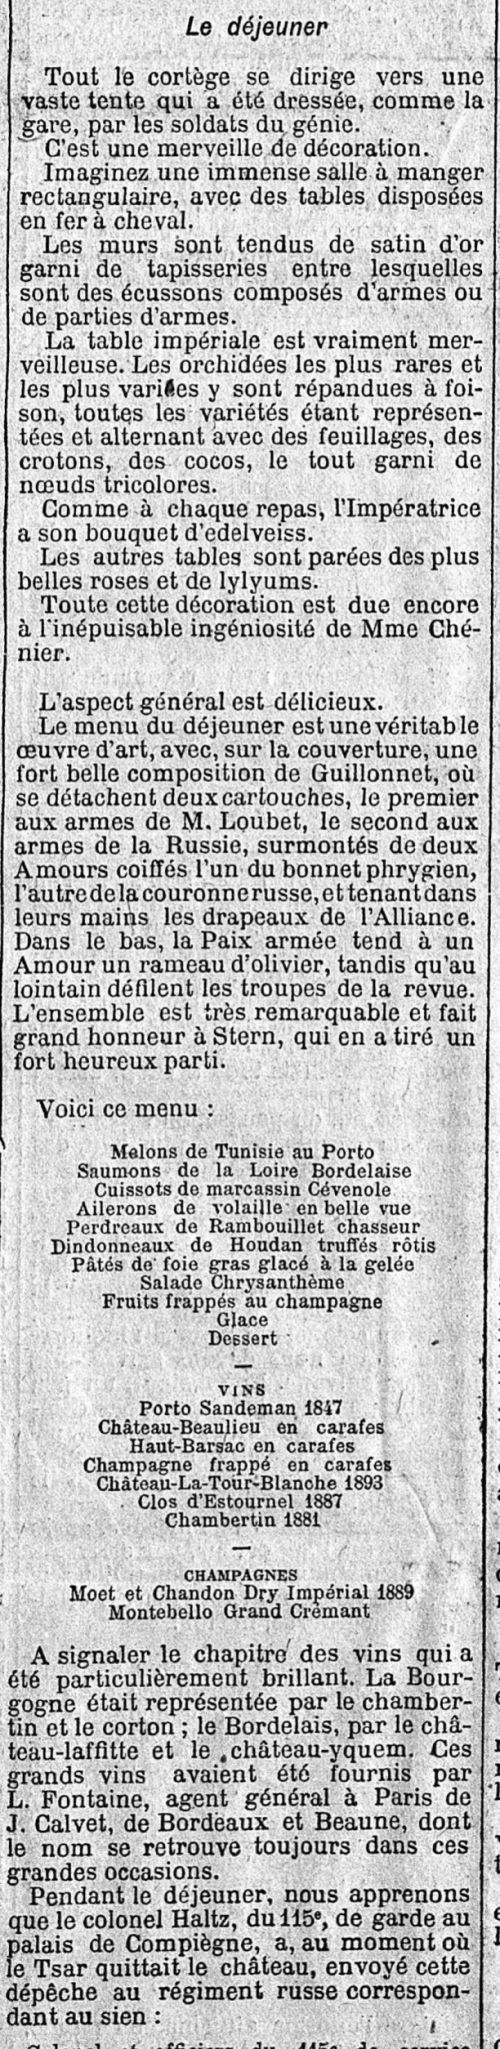 Le Figaro du 22-09-1901 (Gallica.bnf.fr)